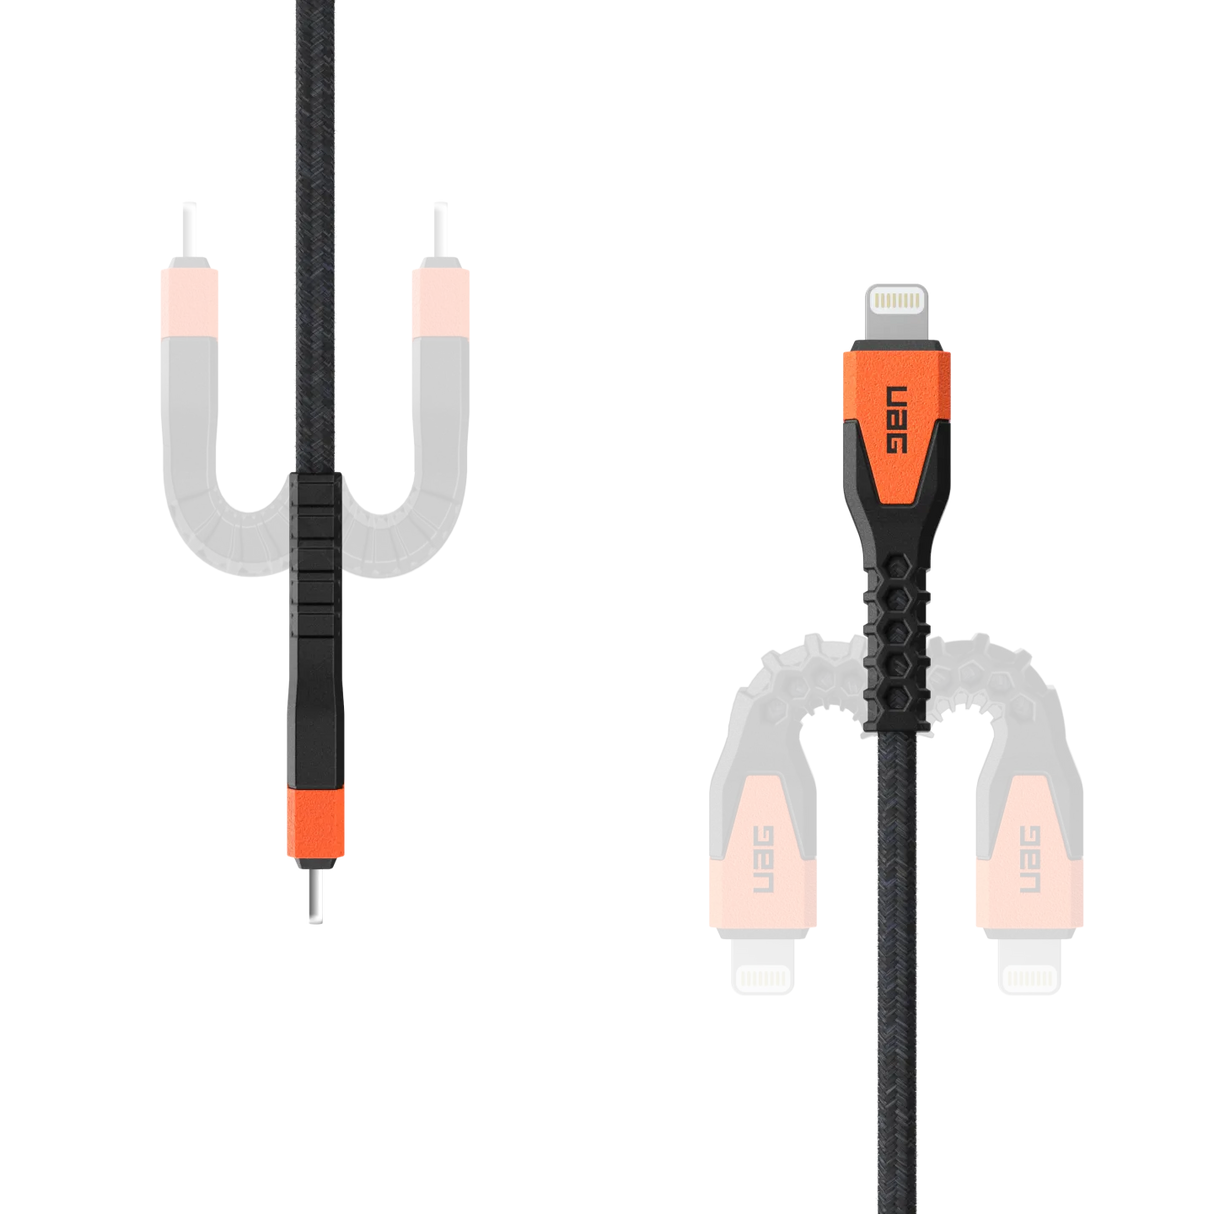 สายชาร์จ UAG รุ่น Rugged Kevlar USB C-to-Lightning Cable ความยาว 1.5 เมตร - สี Black/Orange